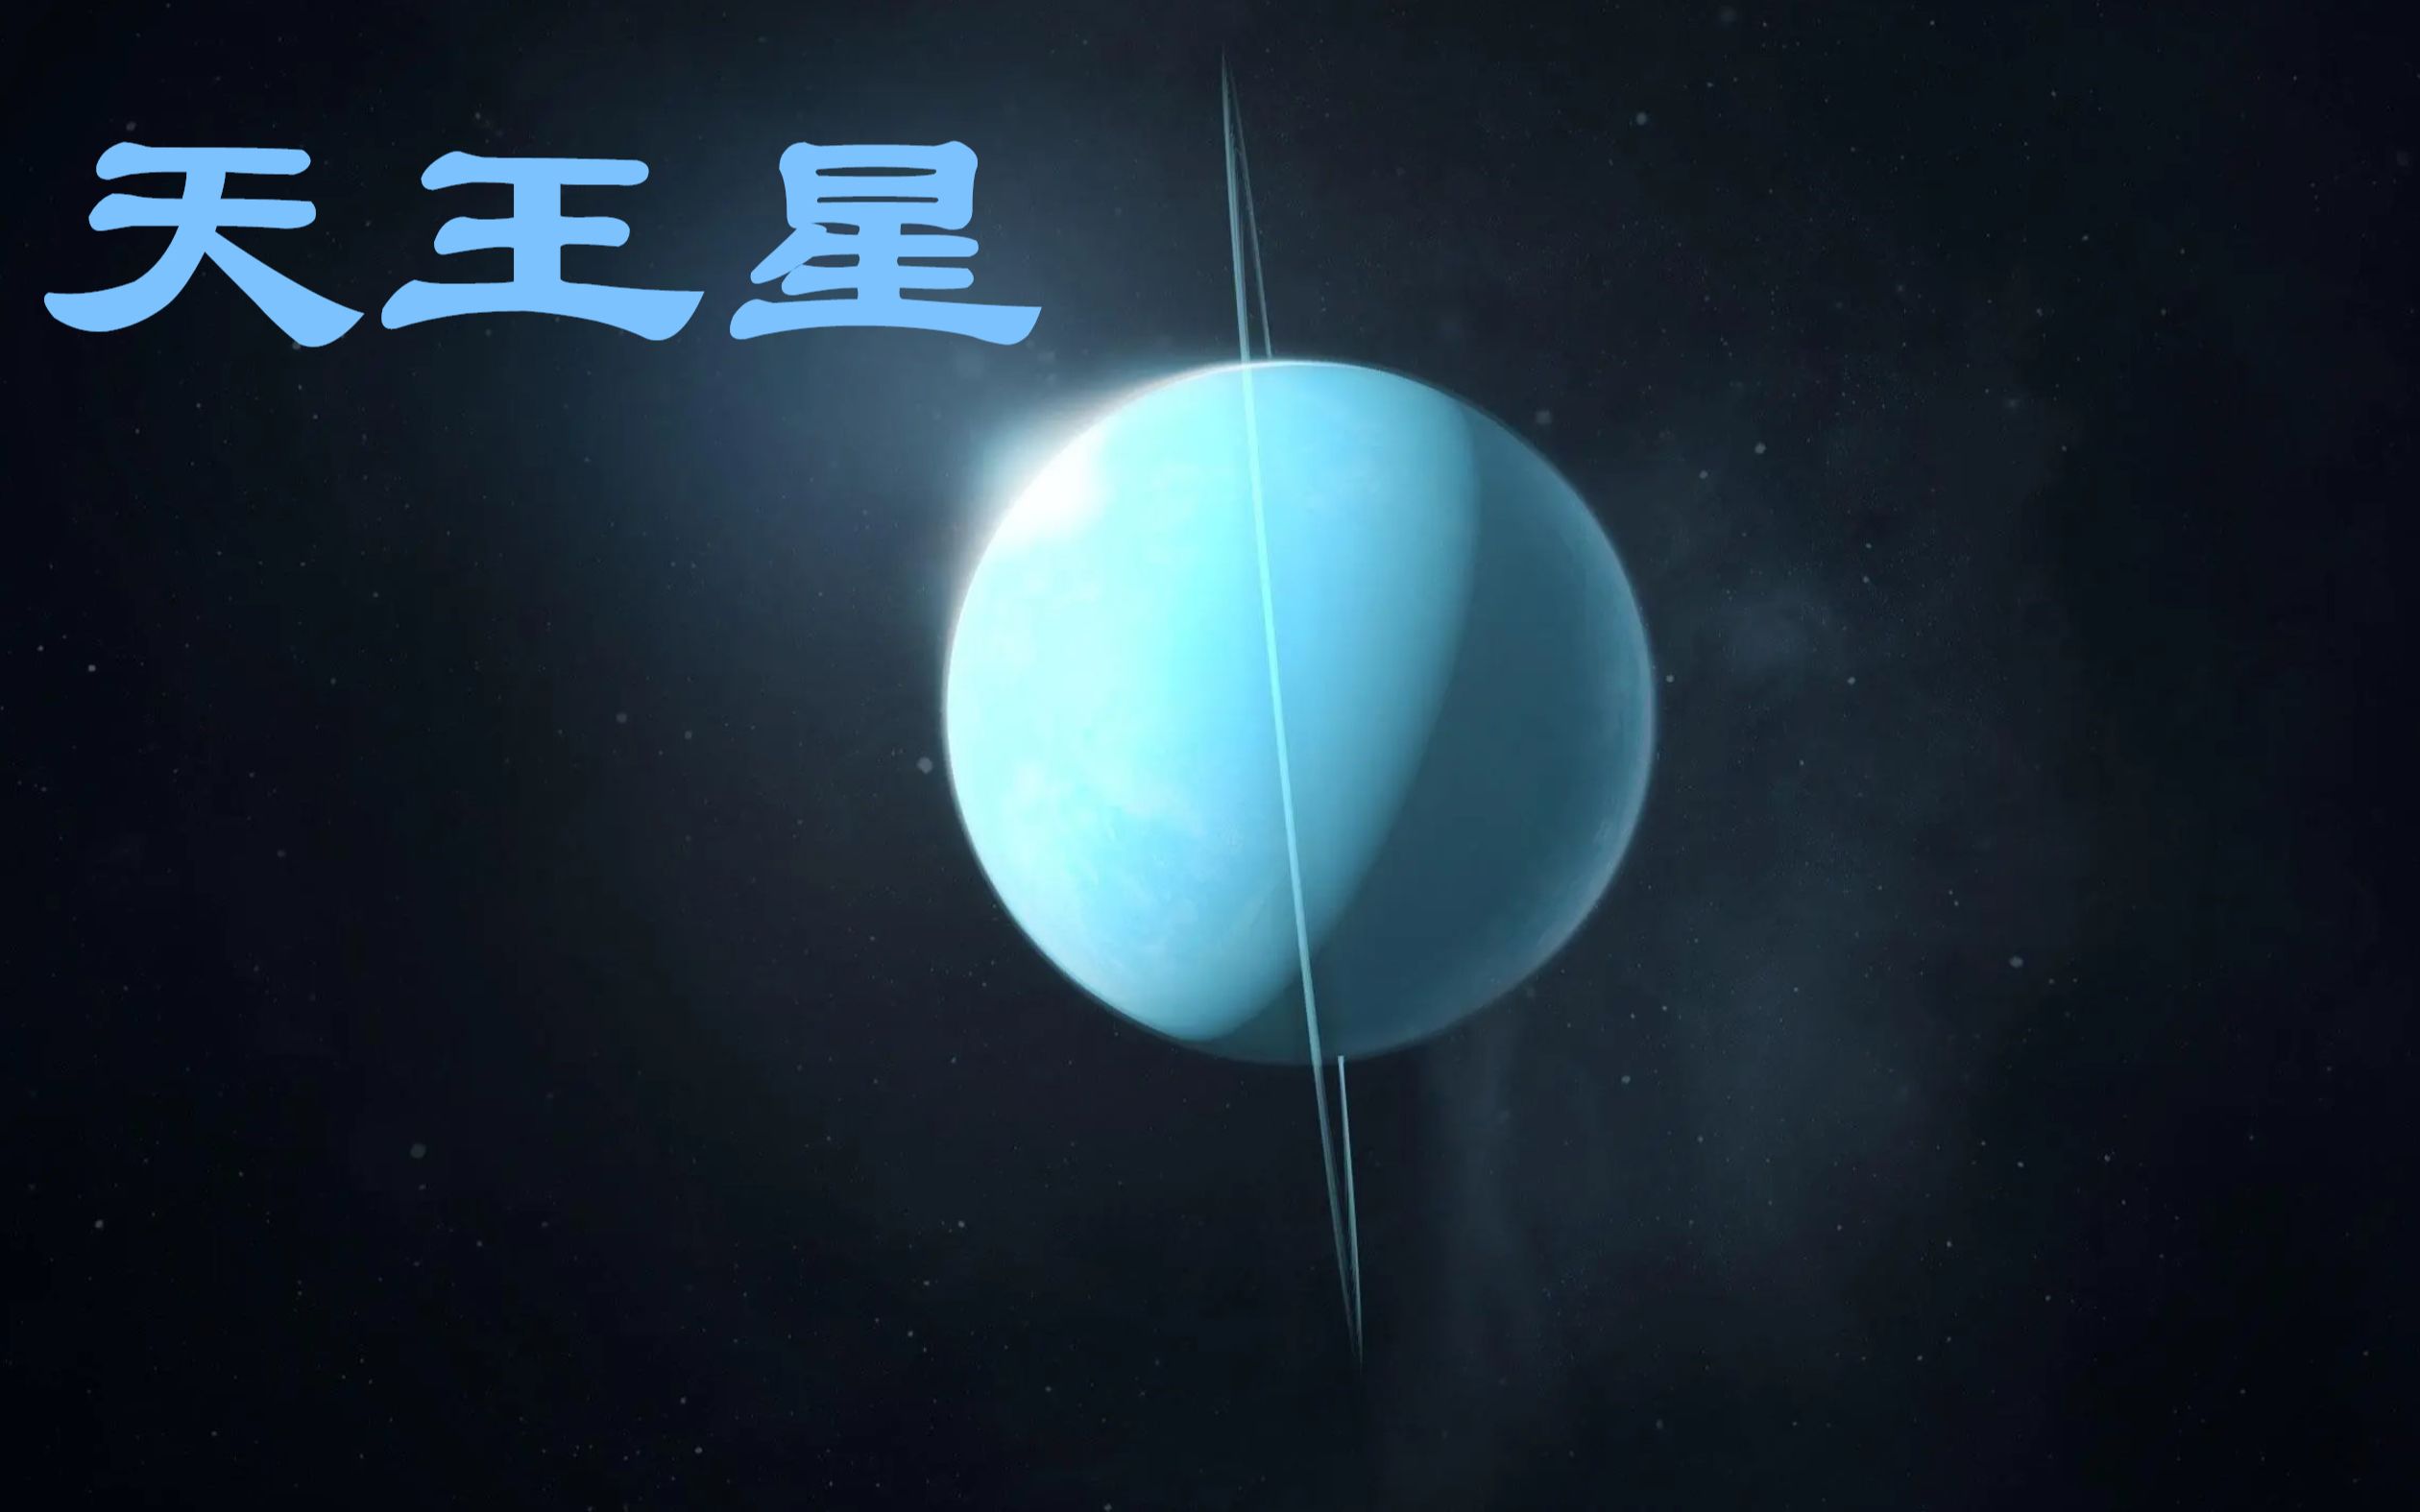 第15集 天王星远日行星 天王星上有大钻石 太空宇宙探索